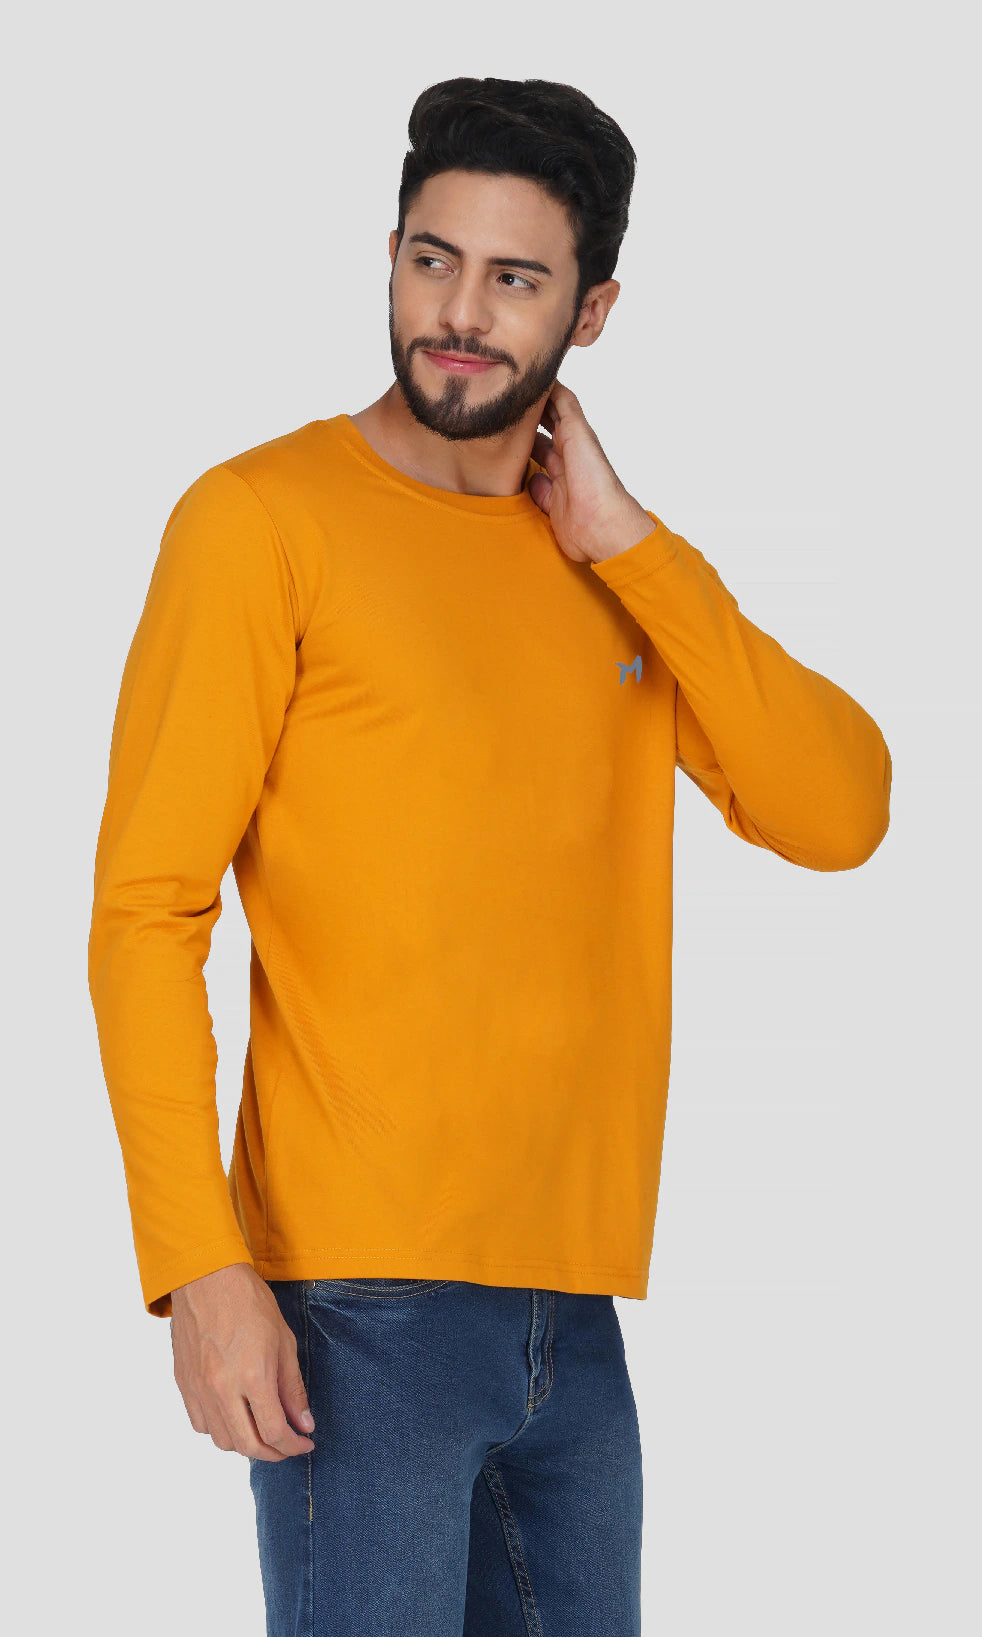 Mebadass Cotton Men's Fullsleeve Regular Size T-shirt - Mustard Yellow